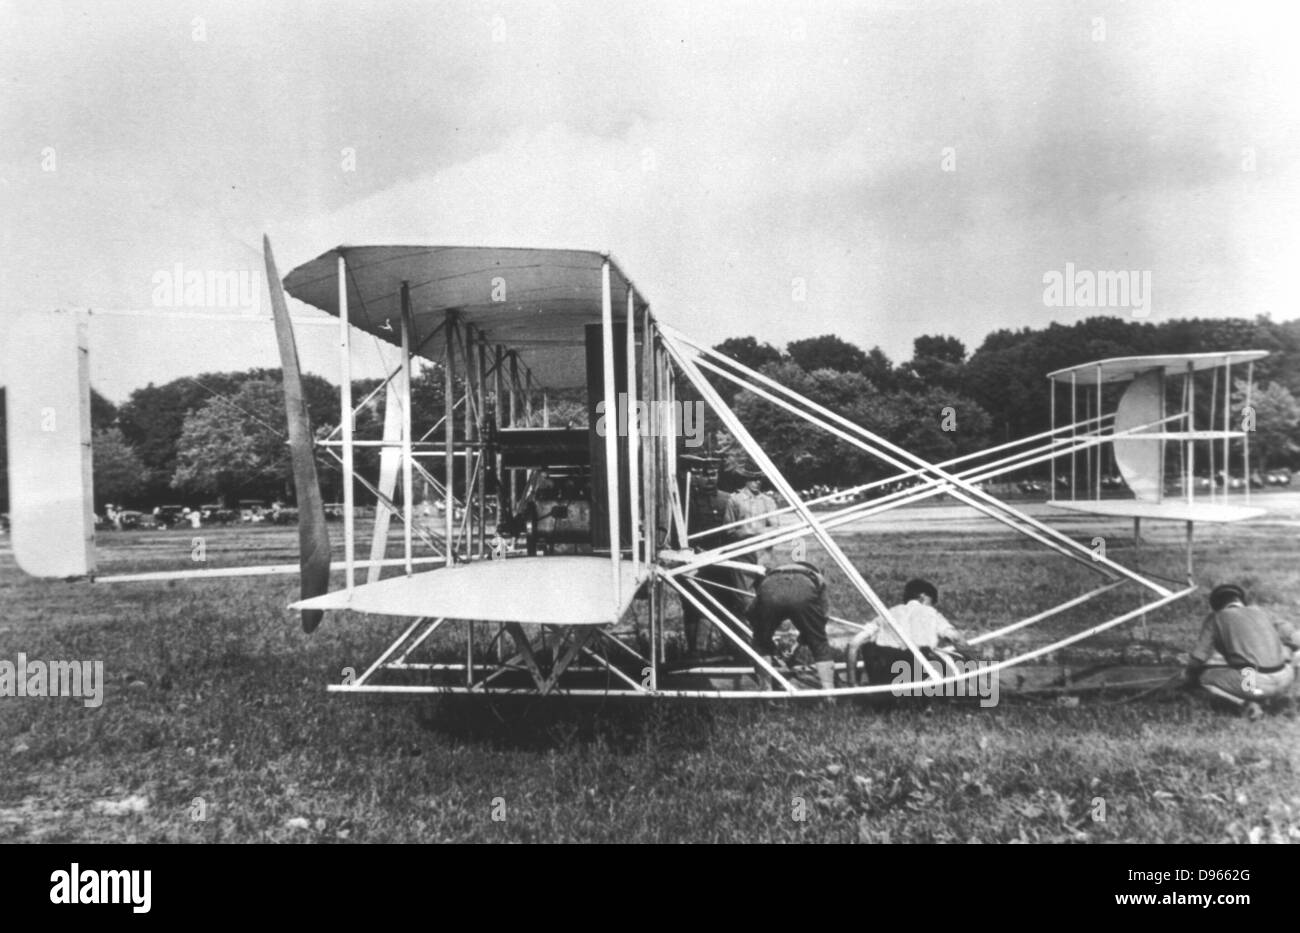 Gebruder Wright Militarische Flyer Aus Dem Jahre 1909 Zu Fotografieren Stockfotografie Alamy